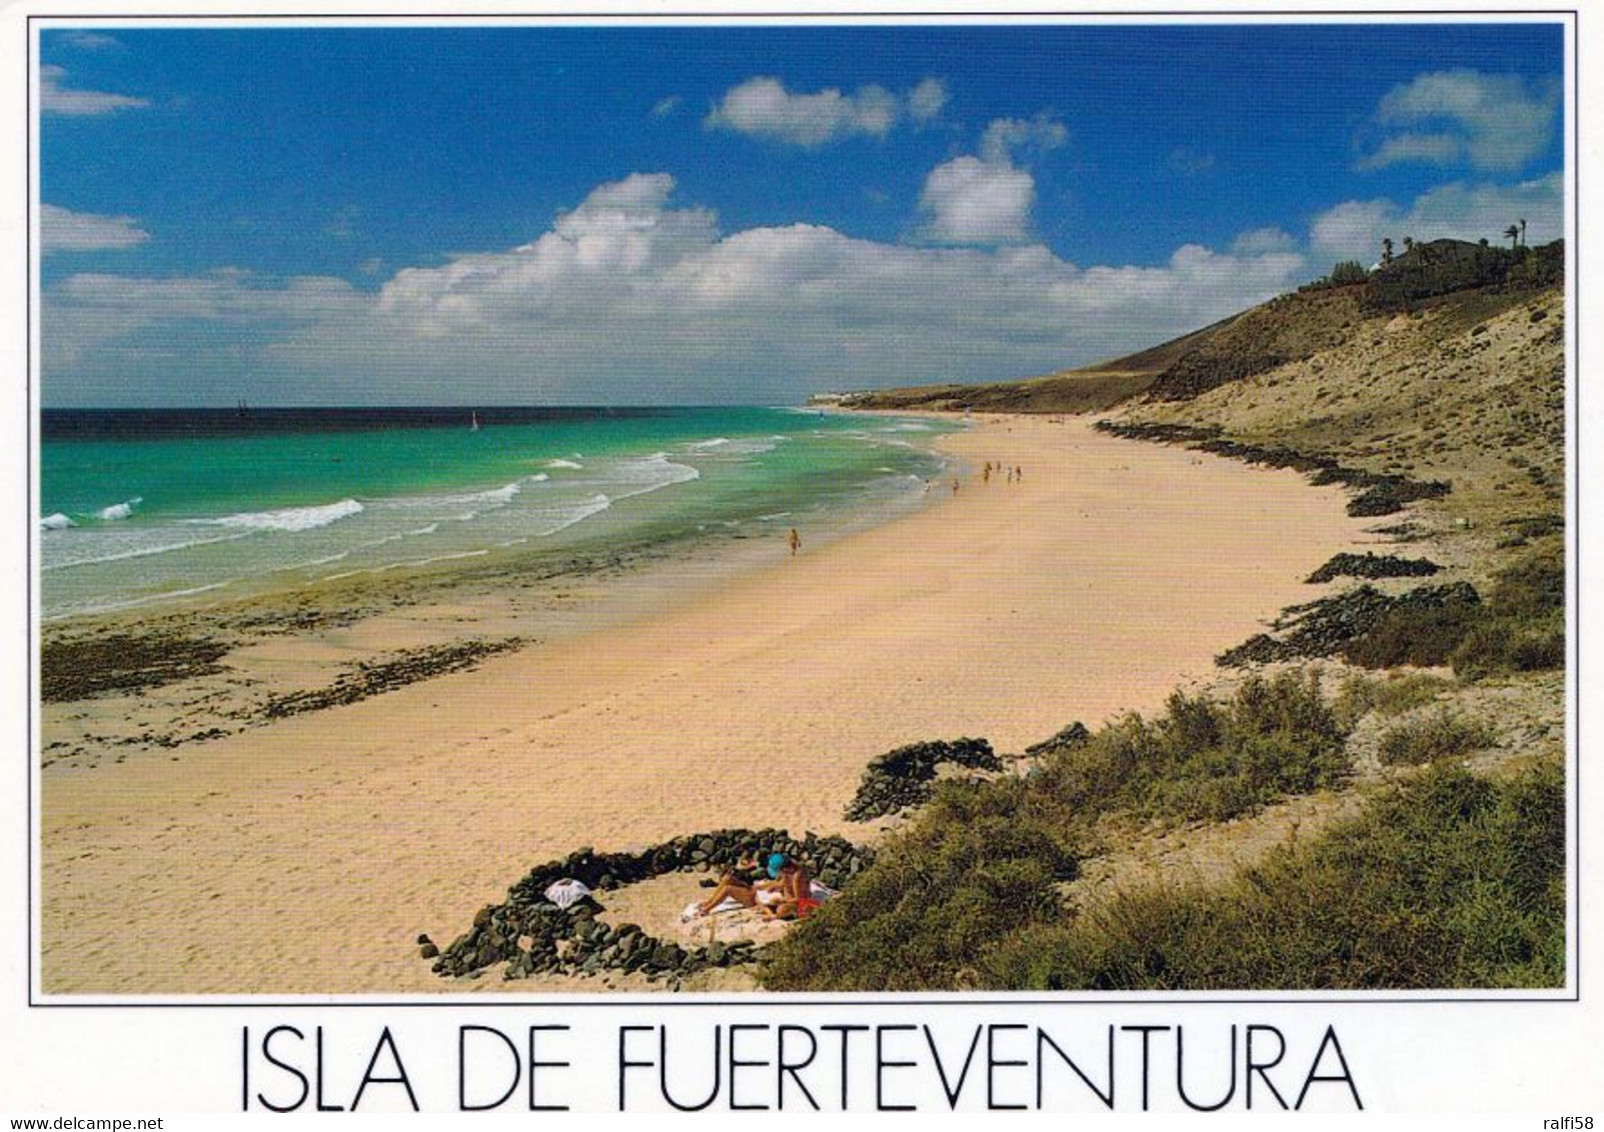 10 AK Insel Fuerteventura * 10 Ansichtskarten mit Landschaften auf der Insel Fuerteventura - siehe die 10 Scans *